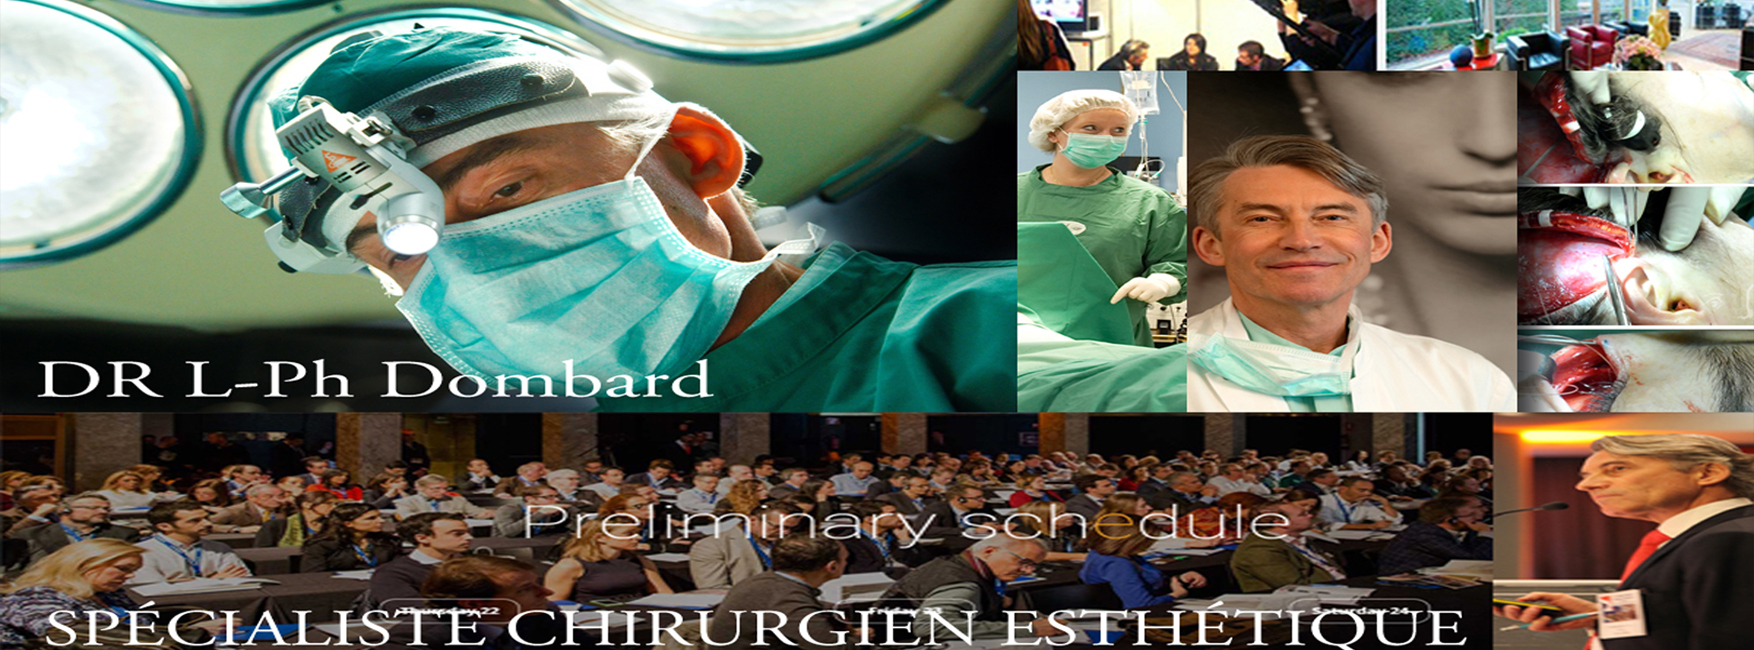 Clinique de chirurgie esthétique - Overijse Bruxelles - DR Dombard